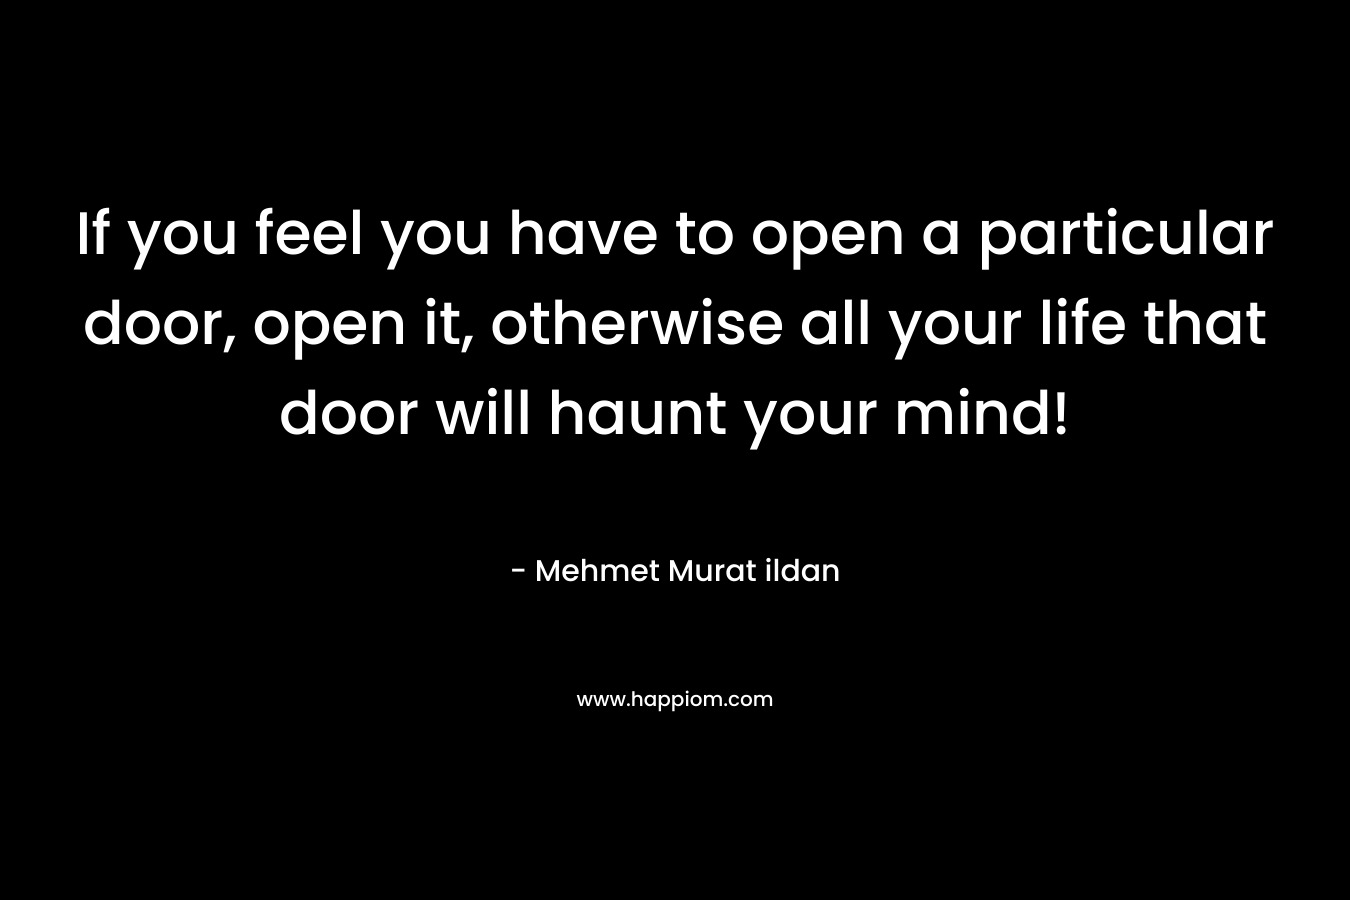 If you feel you have to open a particular door, open it, otherwise all your life that door will haunt your mind! – Mehmet Murat ildan